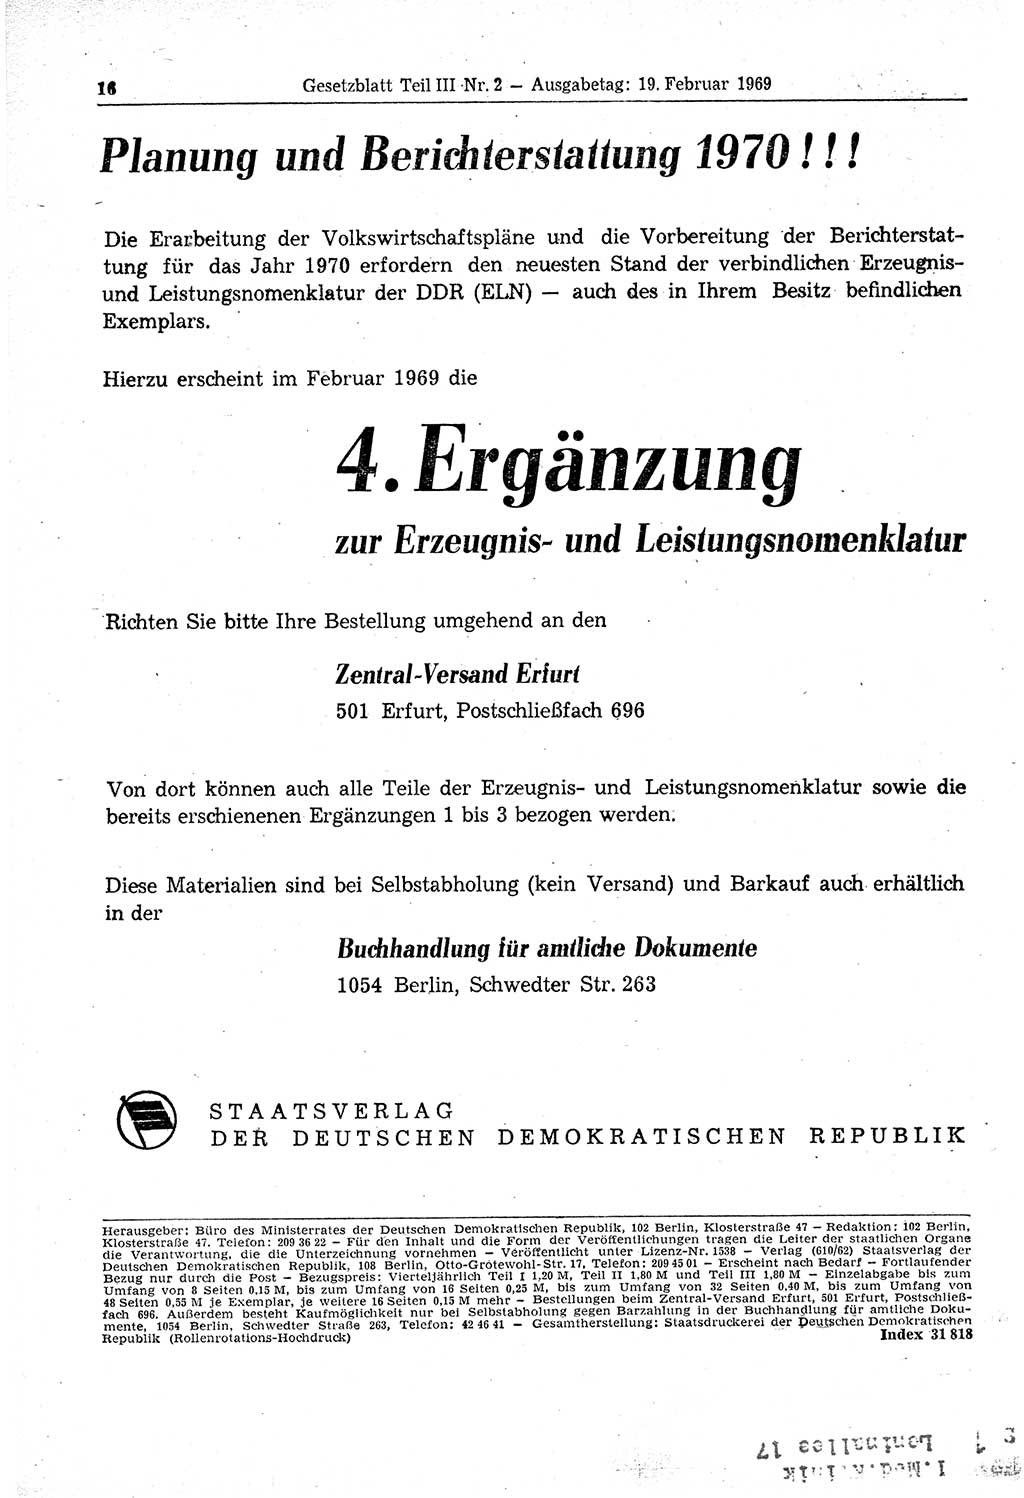 Gesetzblatt (GBl.) der Deutschen Demokratischen Republik (DDR) Teil ⅠⅠⅠ 1969, Seite 16 (GBl. DDR ⅠⅠⅠ 1969, S. 16)